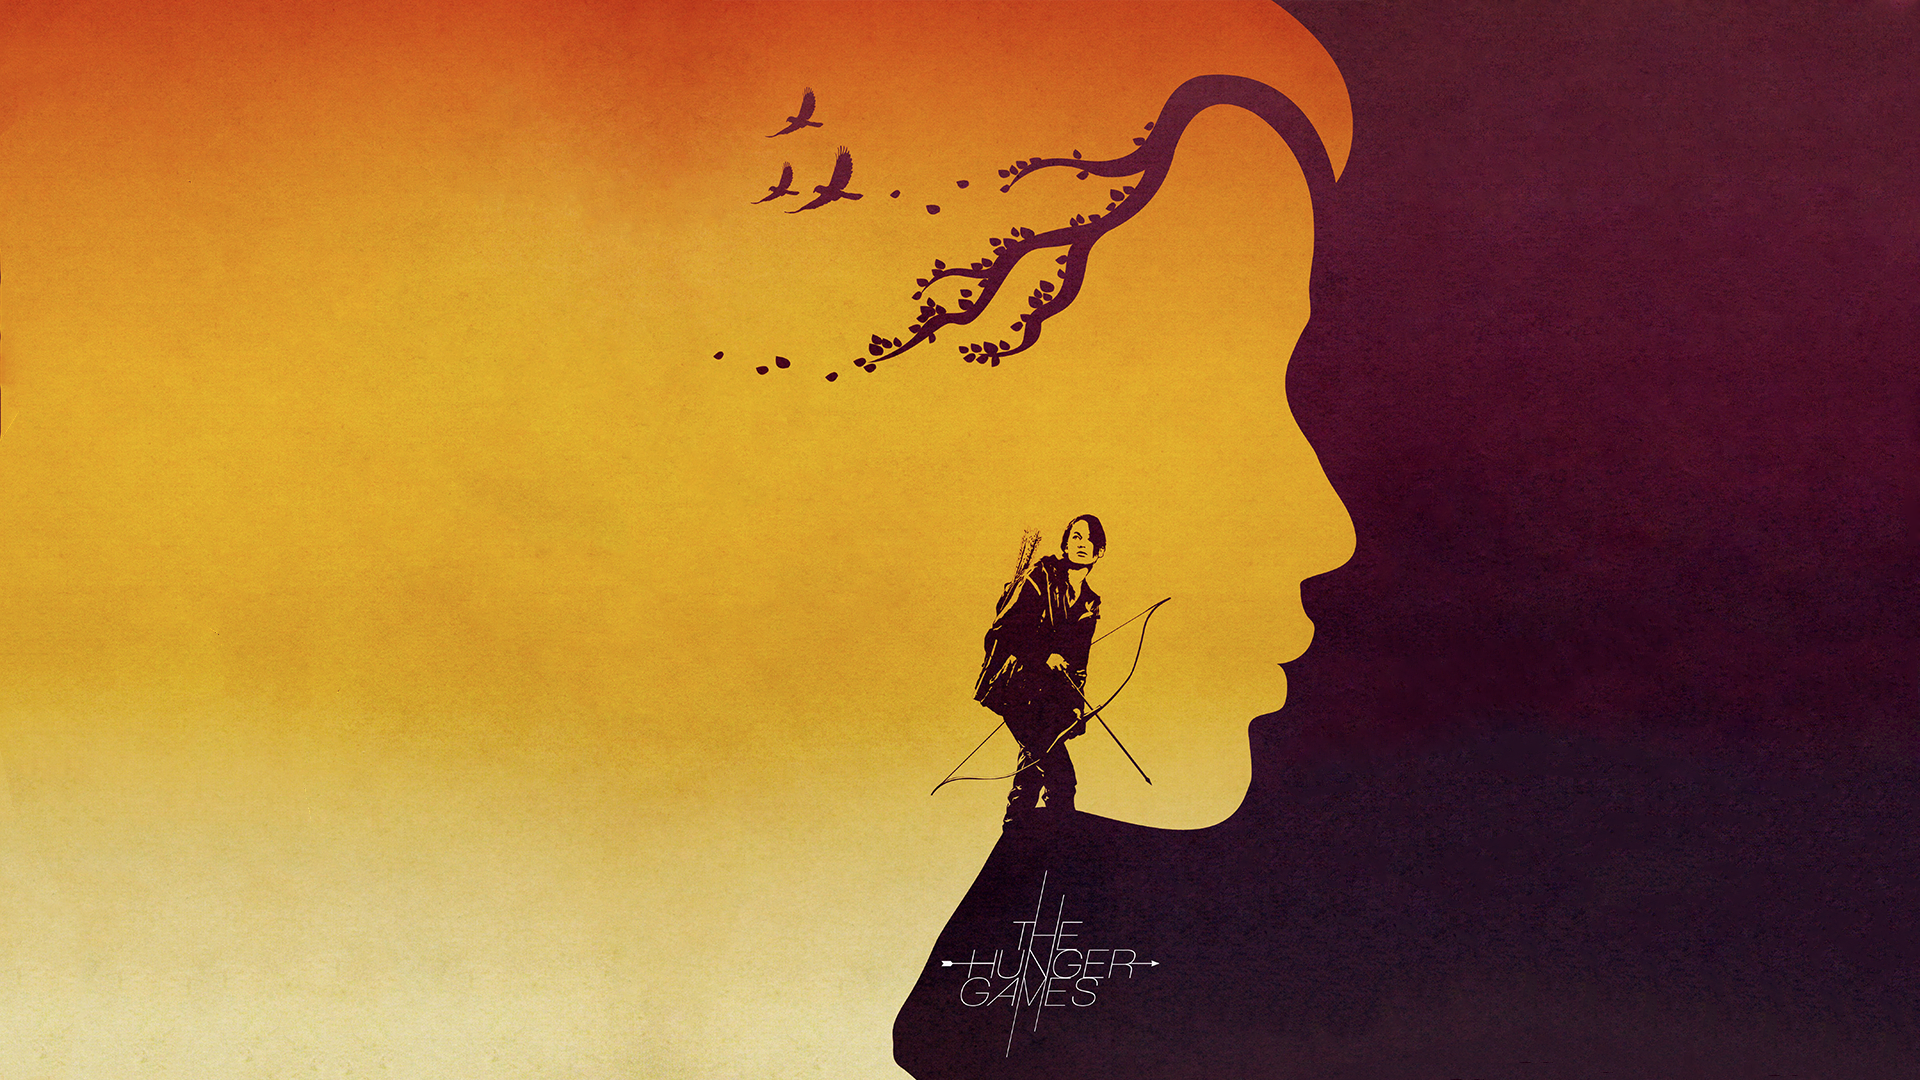 #The Hunger Games, #Katniss Everdeen, wallpaper. Mocah HD Wallpaper